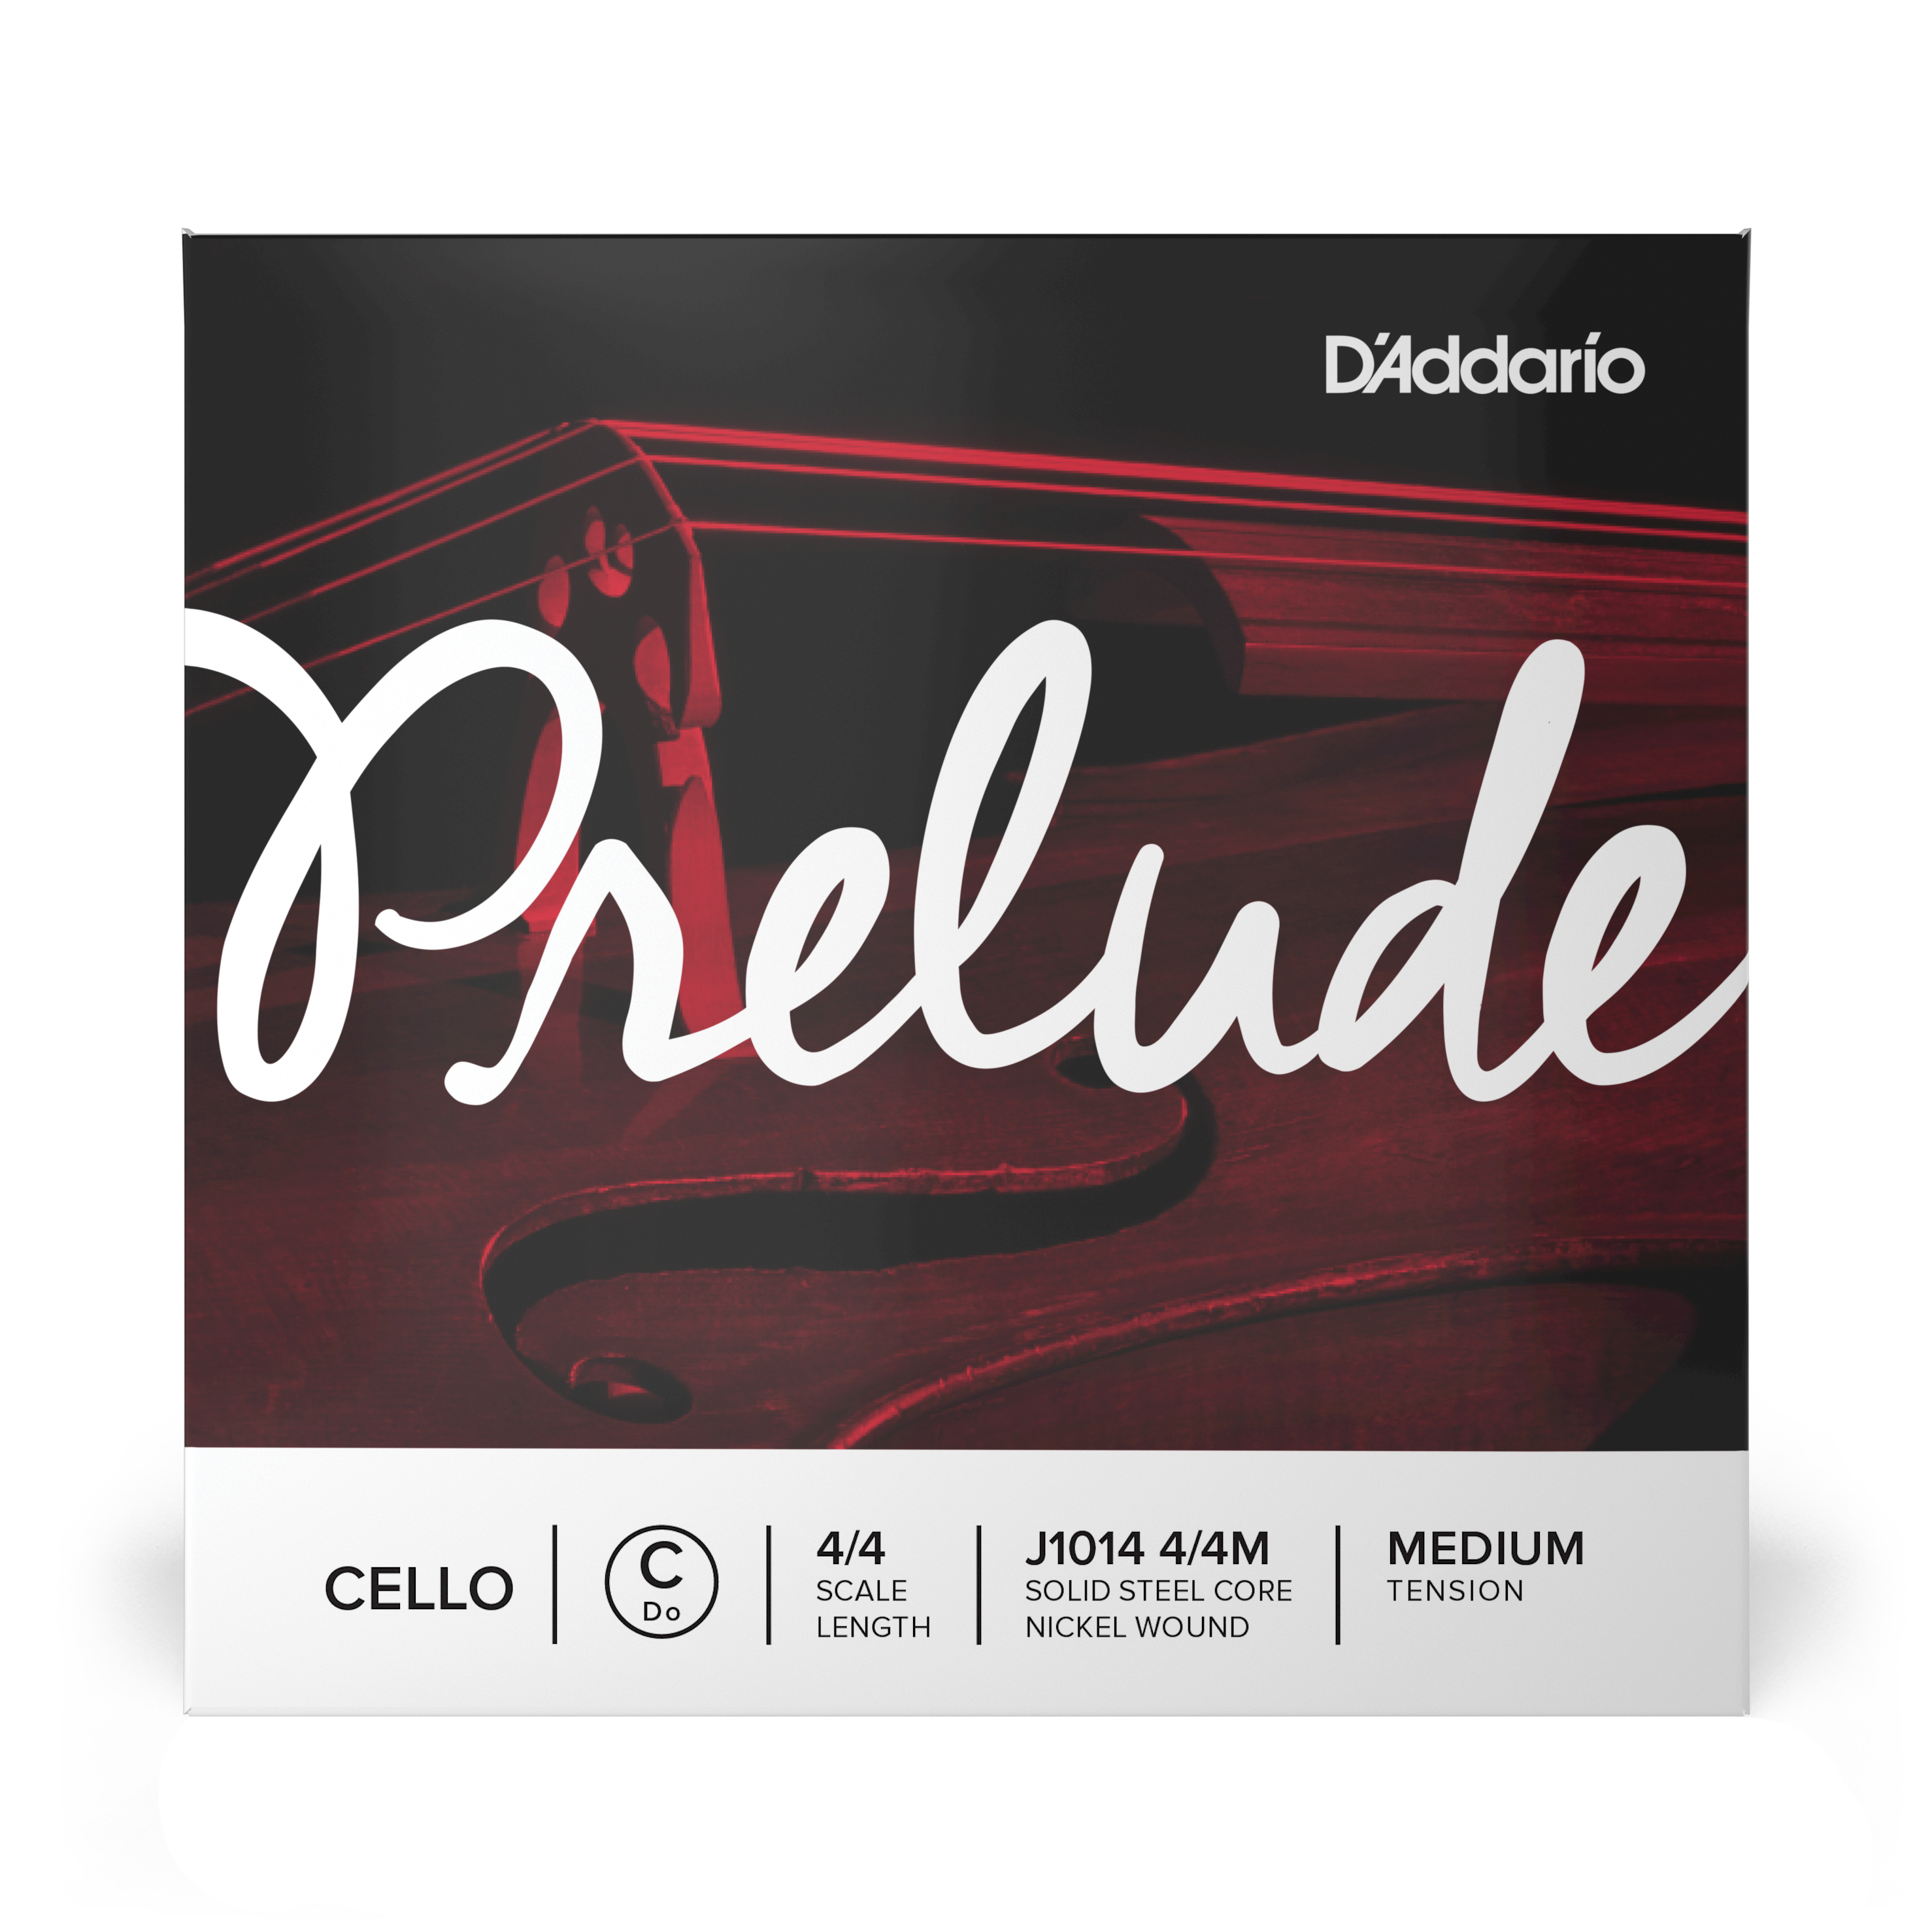 Daddario orchestral it J1014 4/4m corda singola do d'addario prelude per violoncello, scala 4/4, tensione media